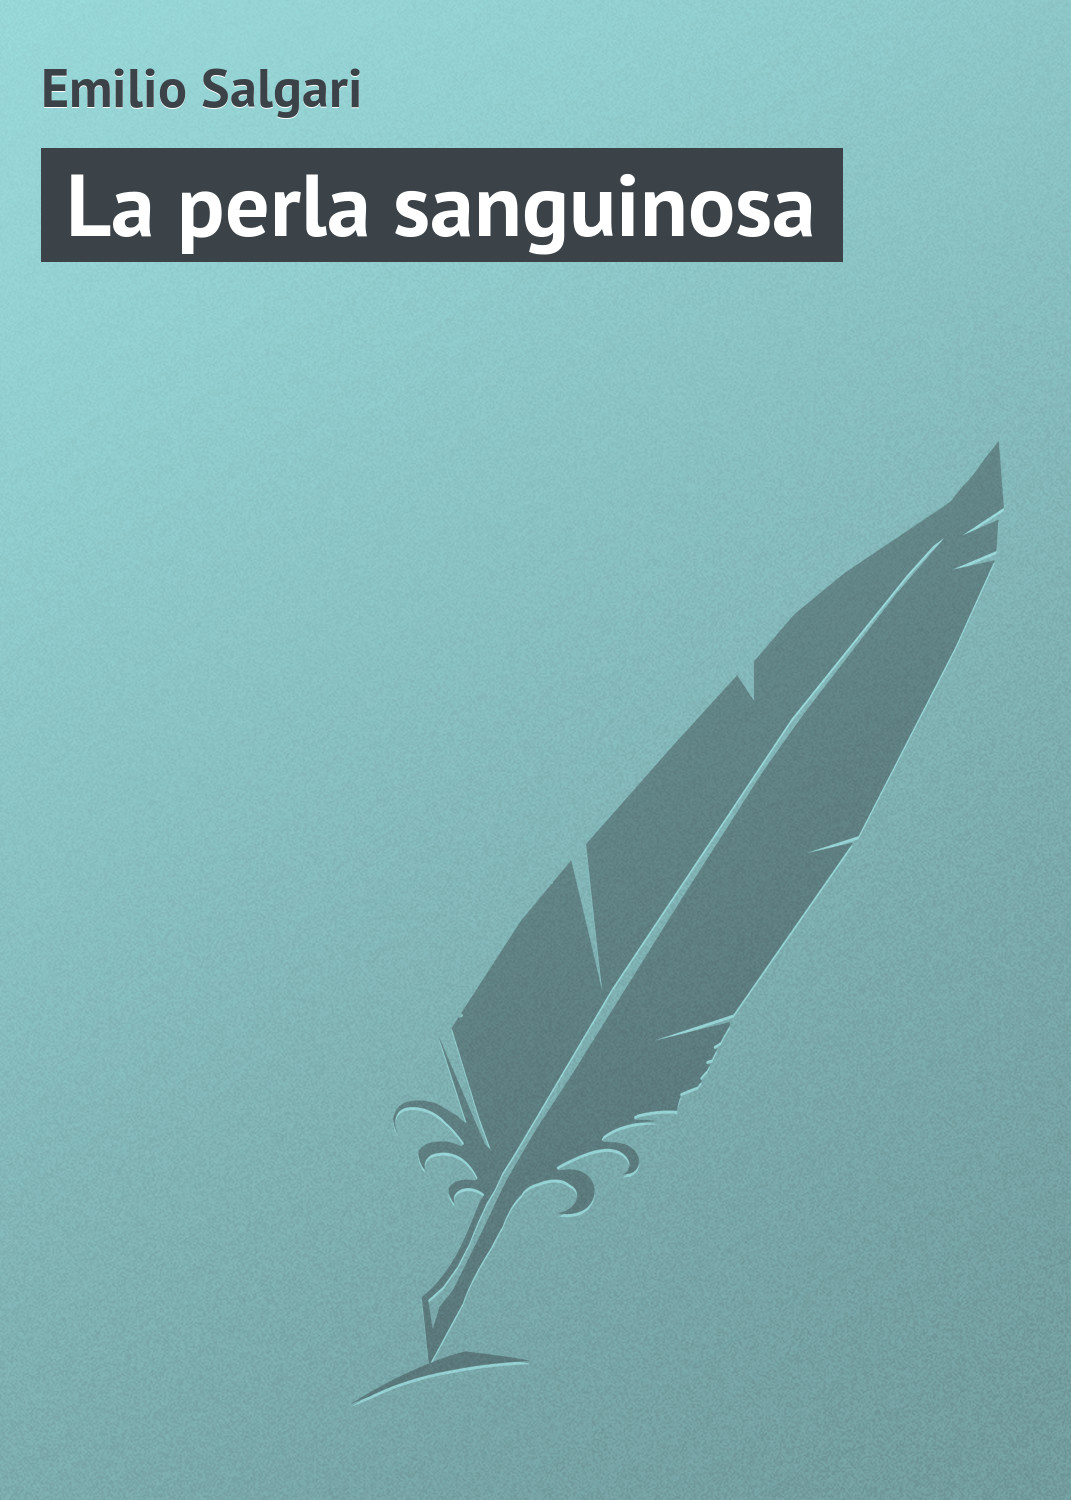 Книга La perla sanguinosa из серии , созданная Emilio Salgari, может относится к жанру Зарубежная старинная литература, Зарубежная классика. Стоимость электронной книги La perla sanguinosa с идентификатором 21104142 составляет 5.99 руб.